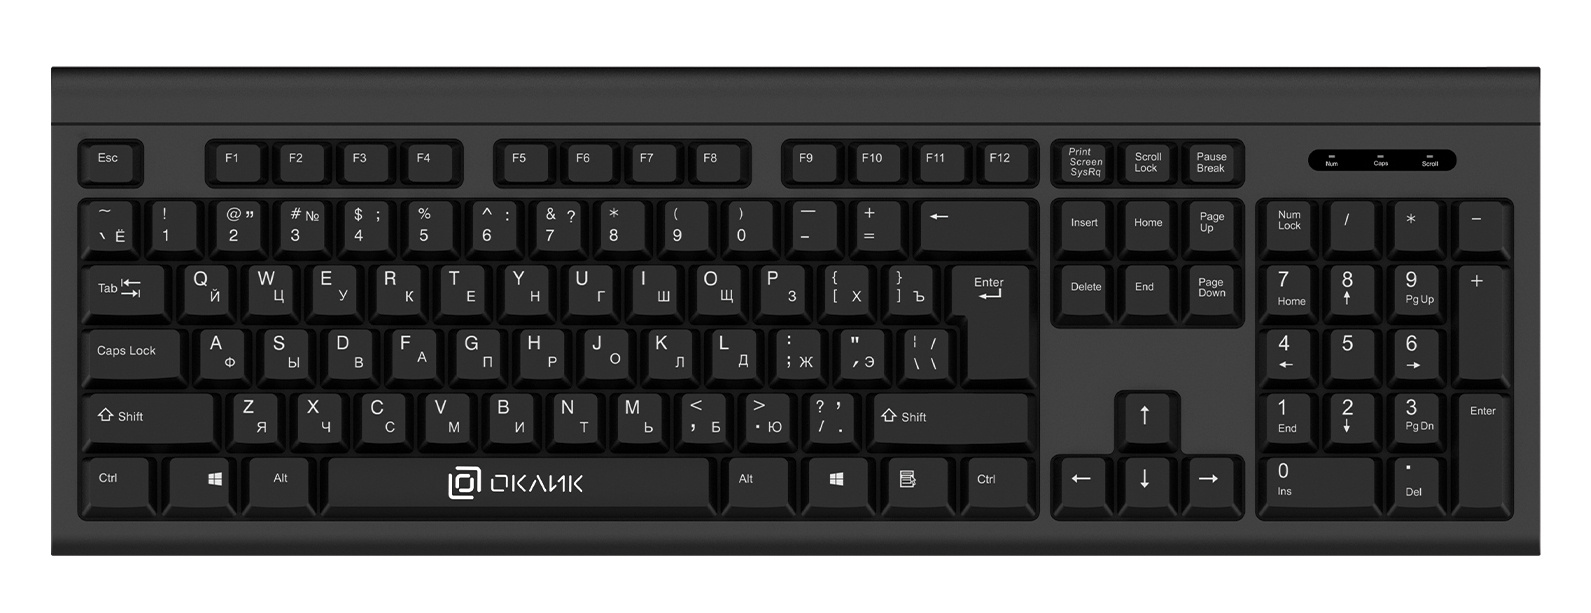 Клавиатура+мышь Oklick 600M клав:черный мышь:черный USB